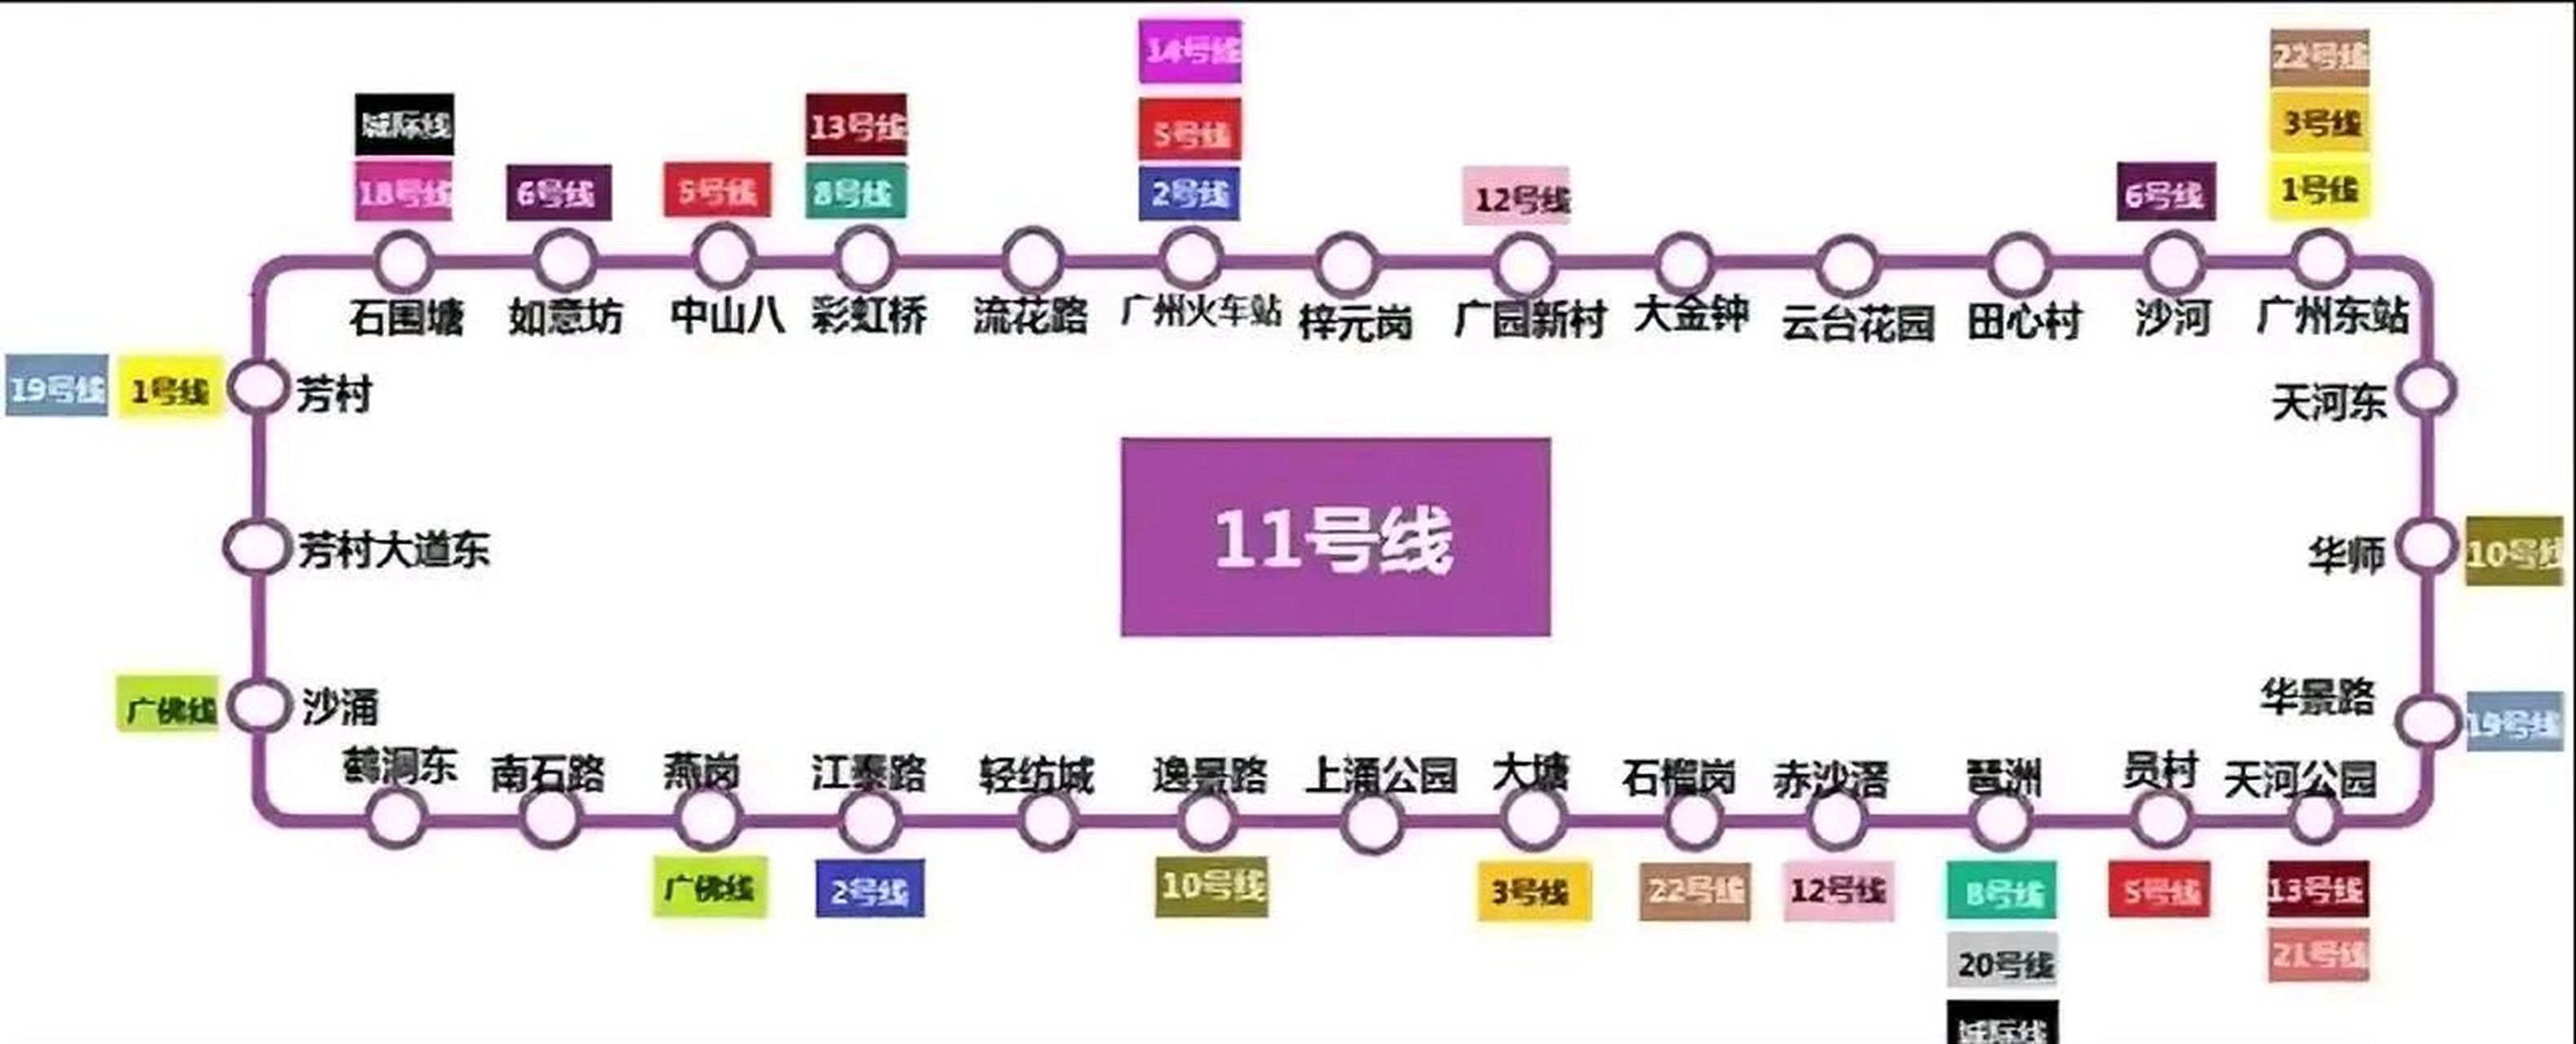 五一节假期,广州地铁11号线和13号线2期,依然没有停工,5万名建设者